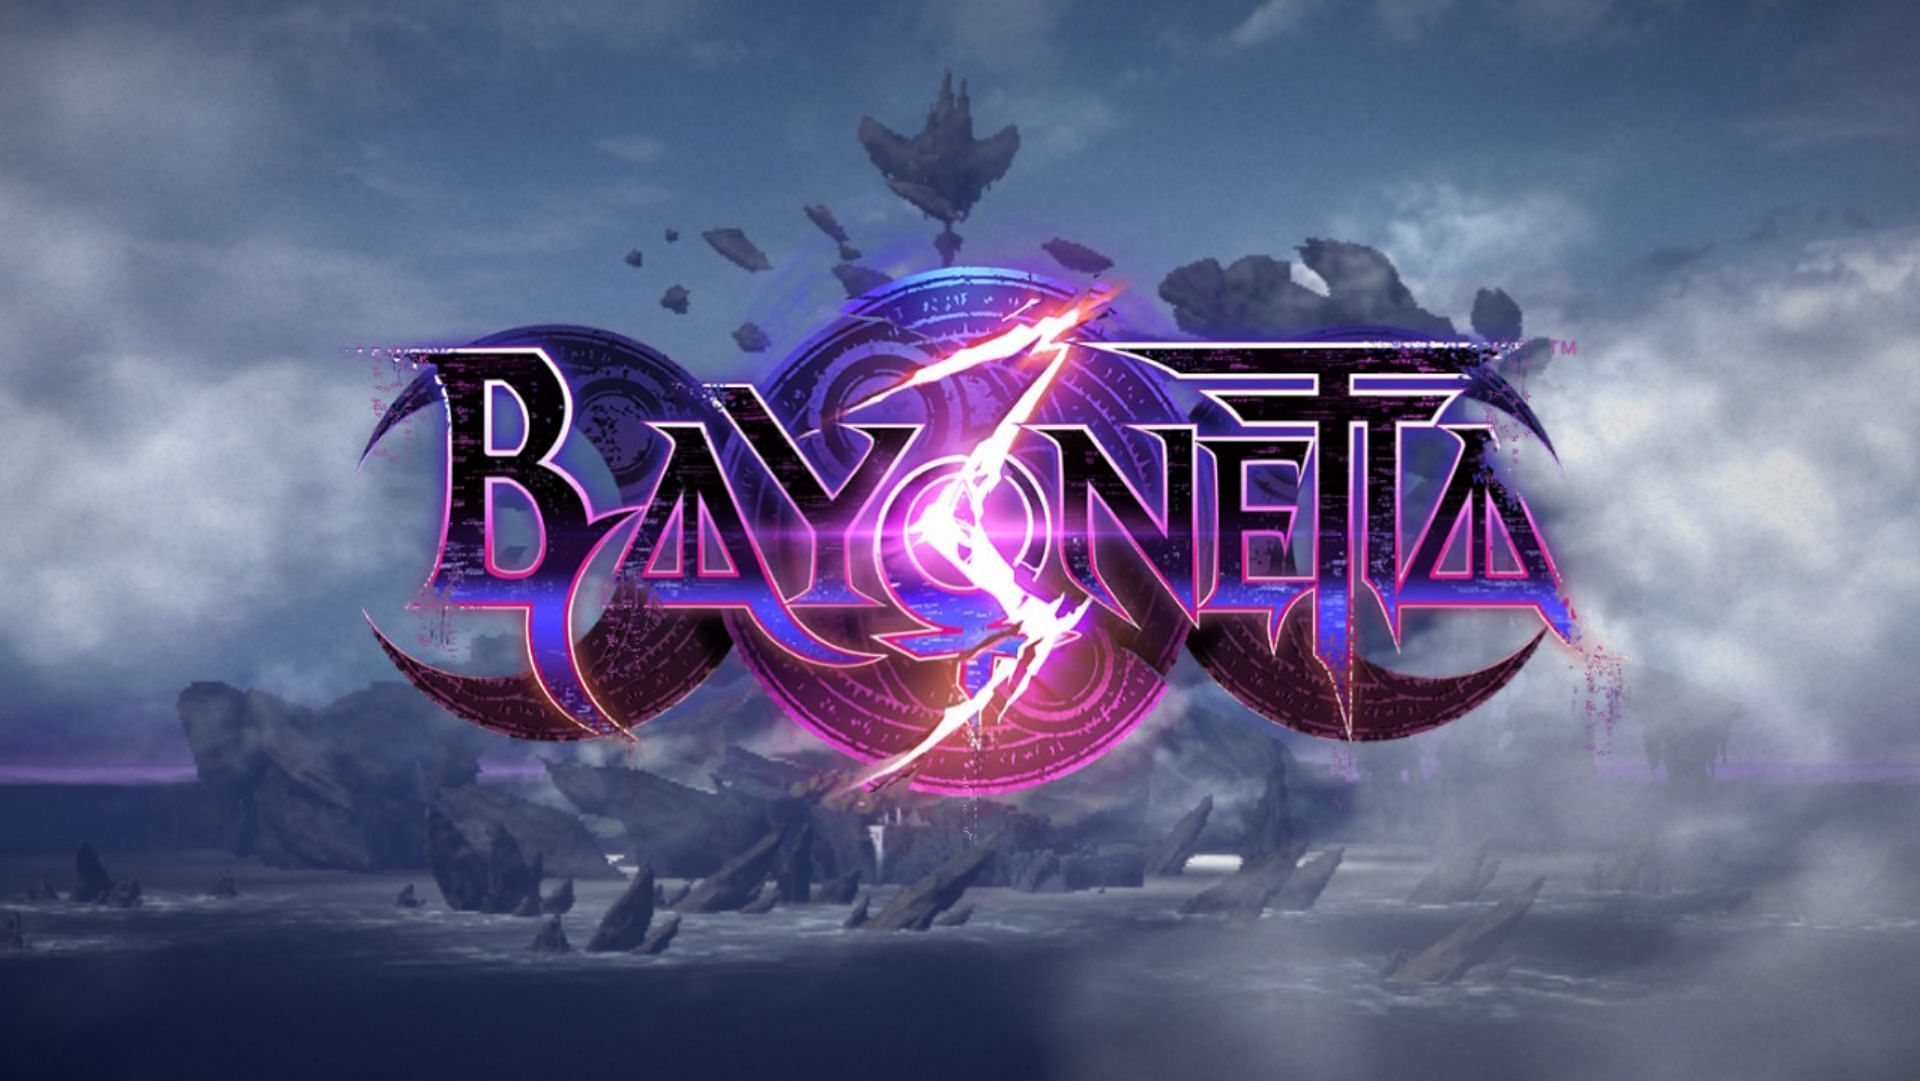 Bayonetta 3 - Análise